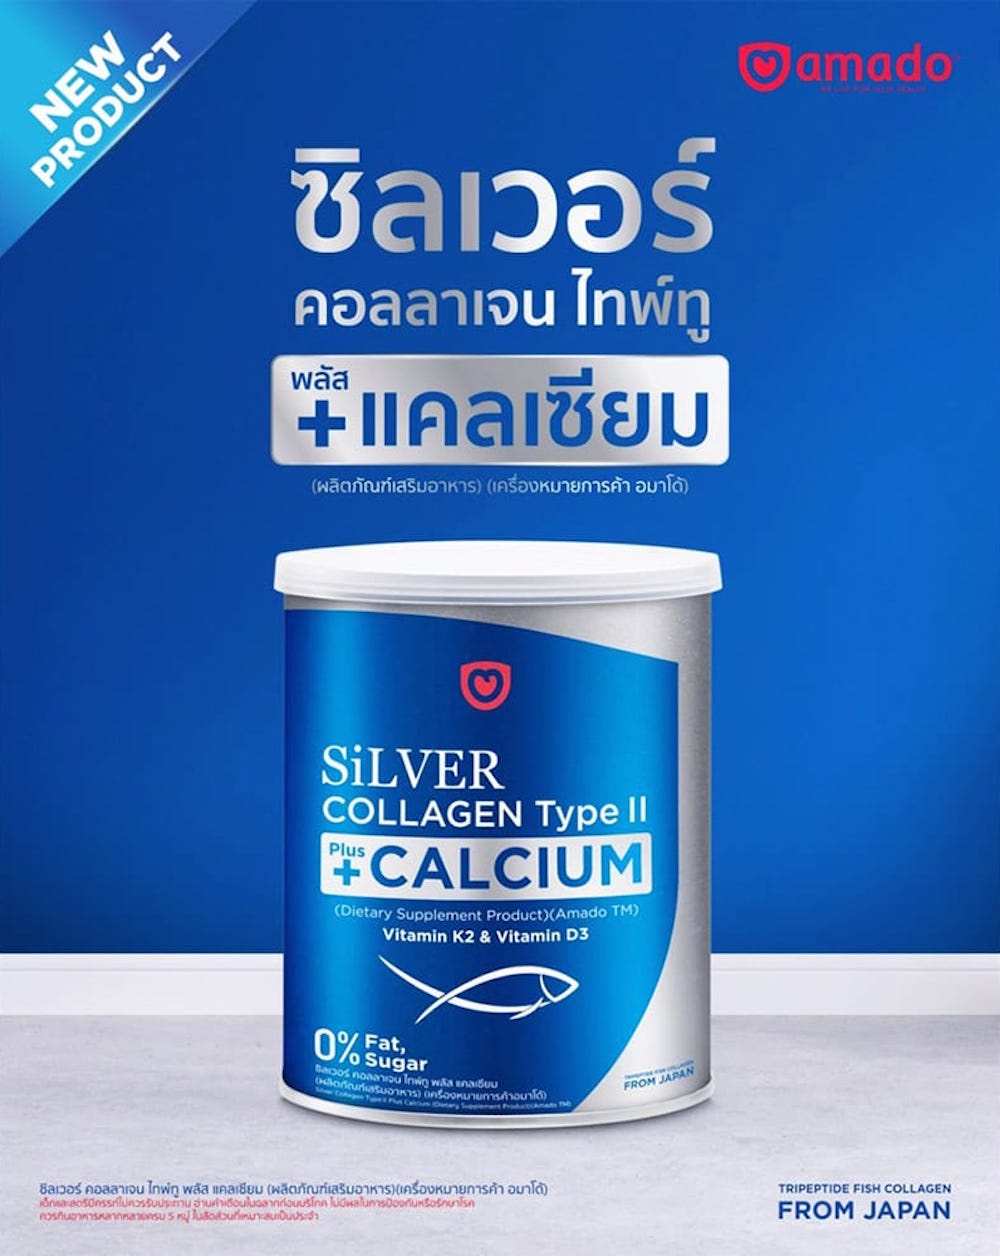 รูปภาพรายละเอียดของ Amado ผลิตภัณฑ์เสริมอาหาร Silver Collagen Type II + Calcium อมาโด้ ซิลเวอร์ คอลลาเจน